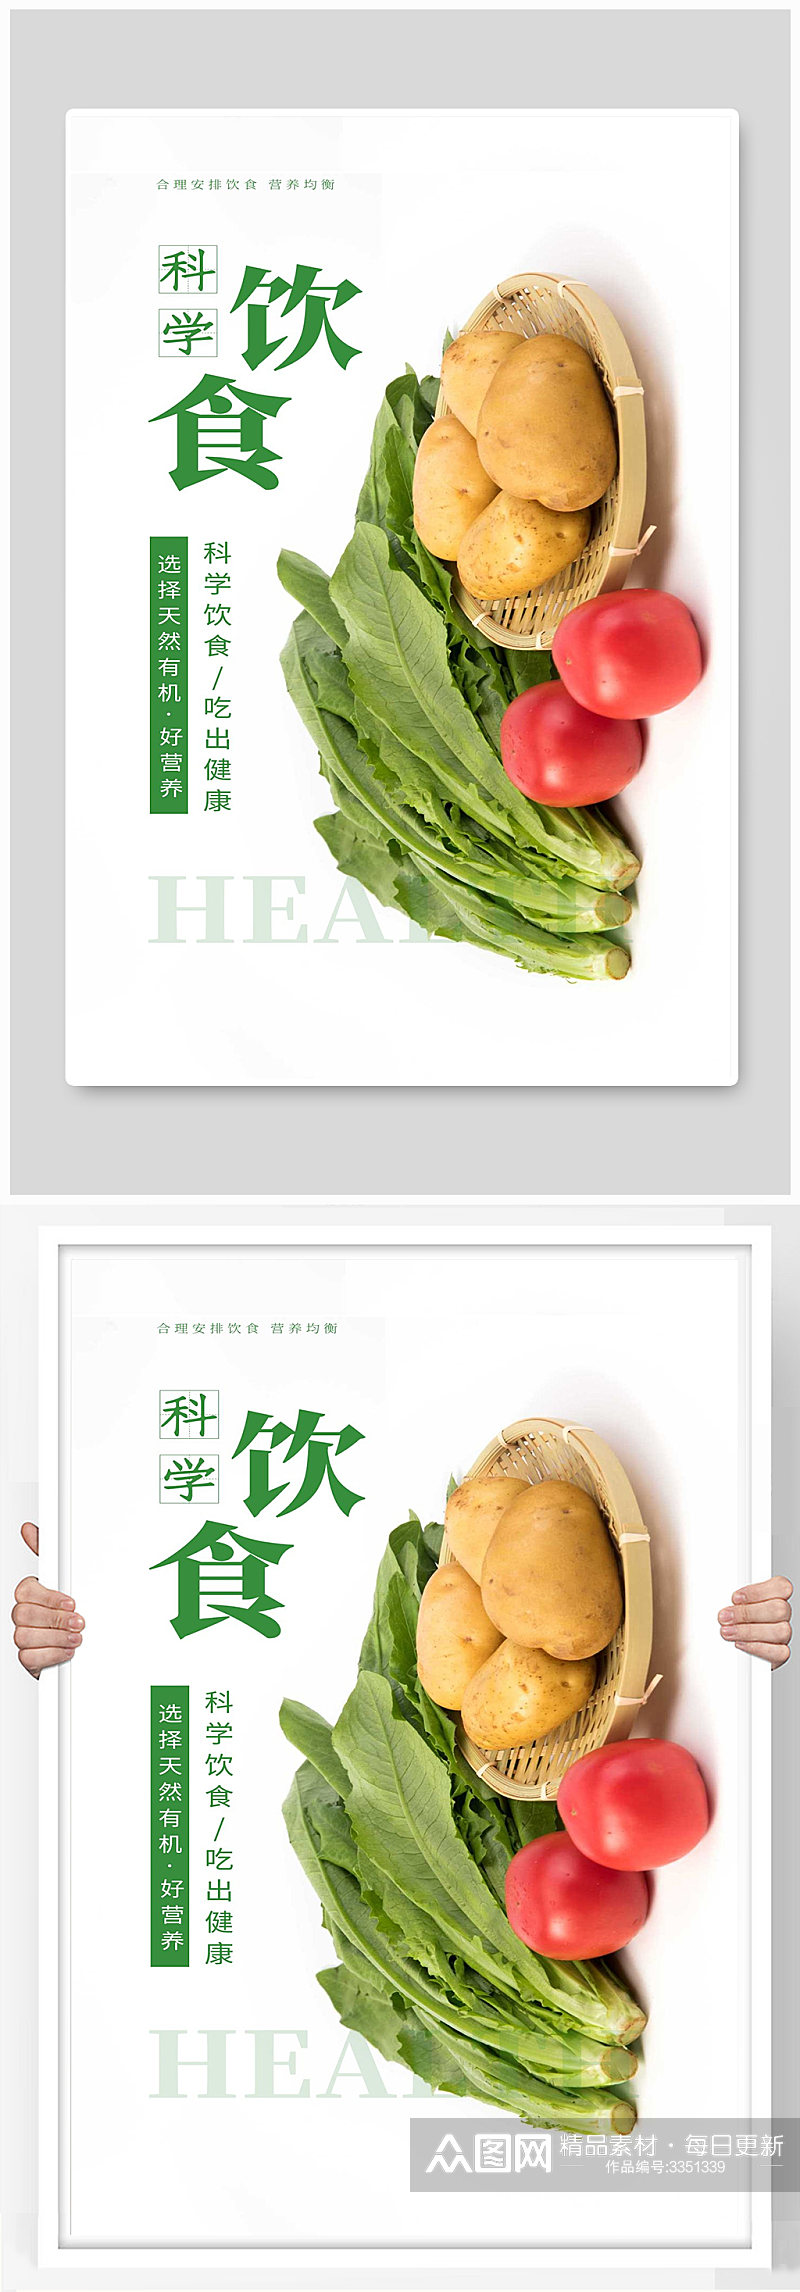 科学饮食吃出健康新鲜蔬菜水果绿色食品海报素材